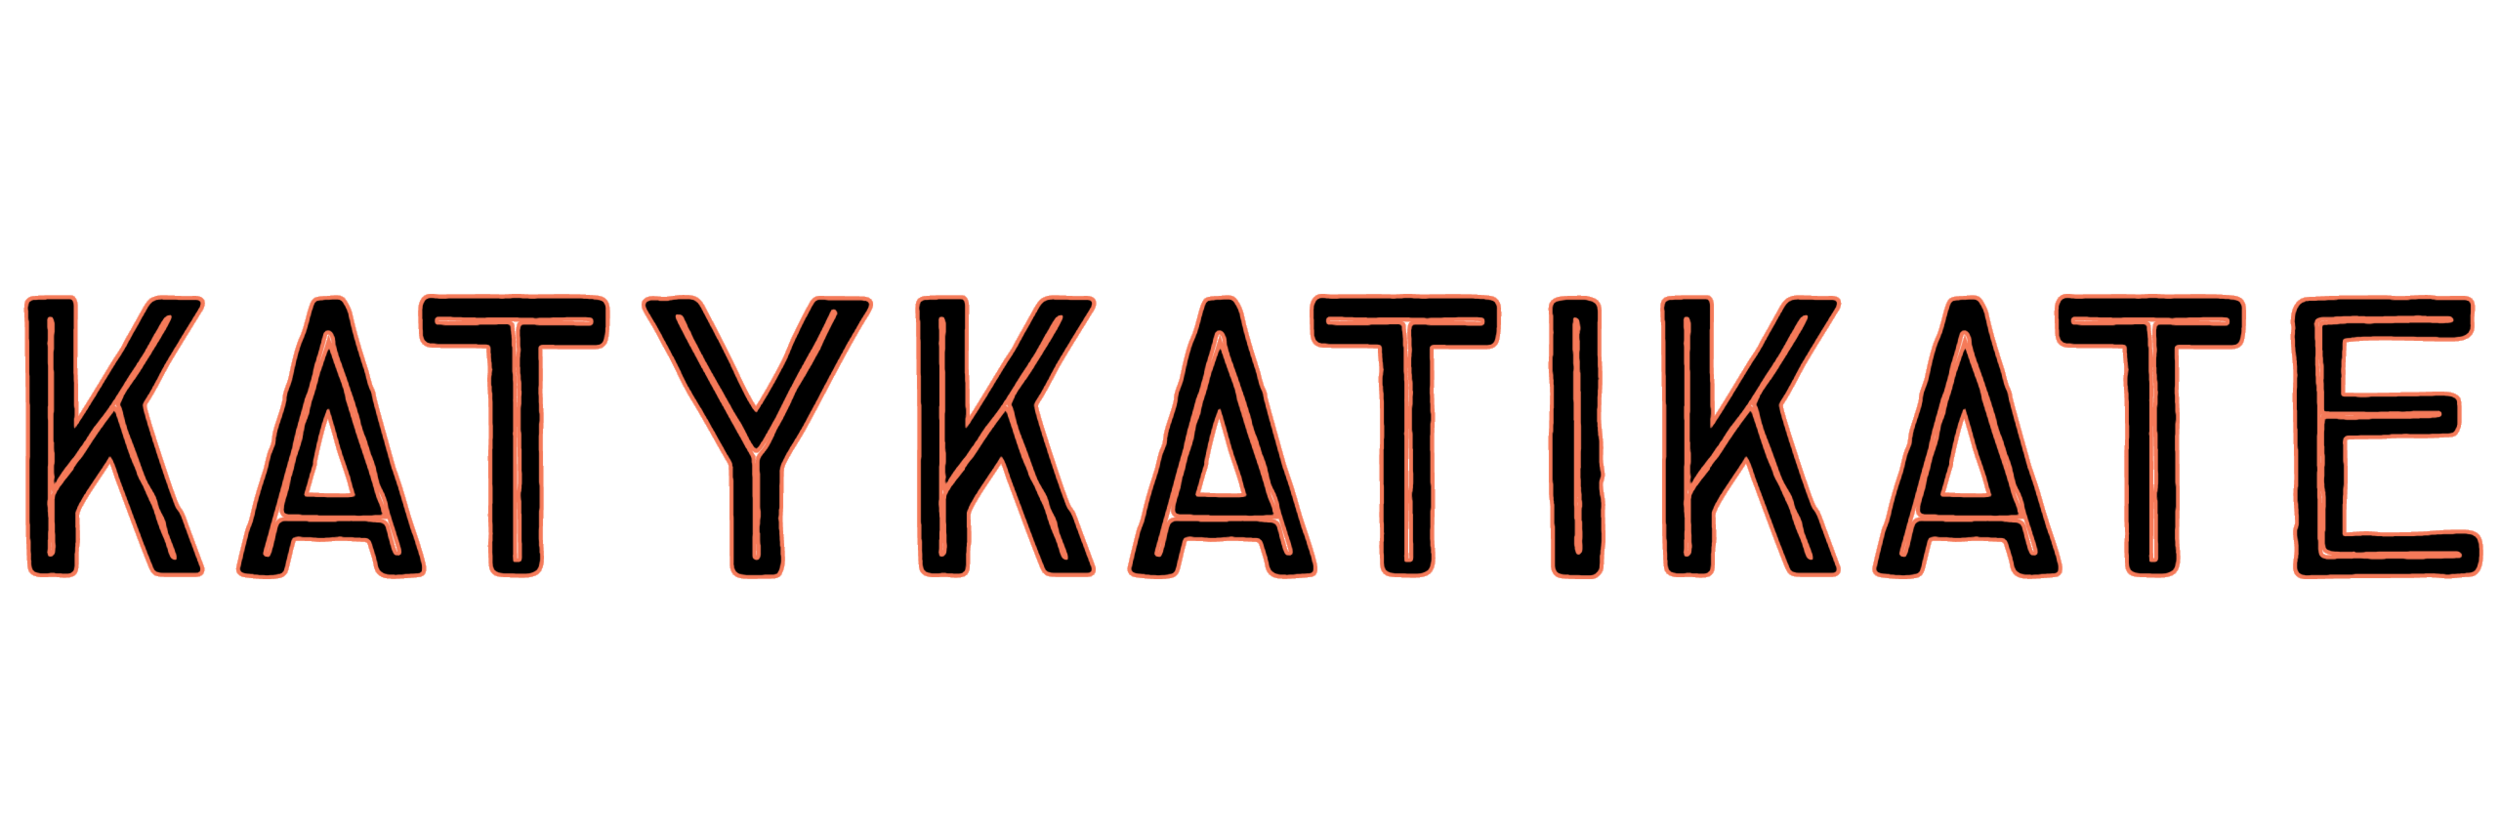 KatyKatiKate